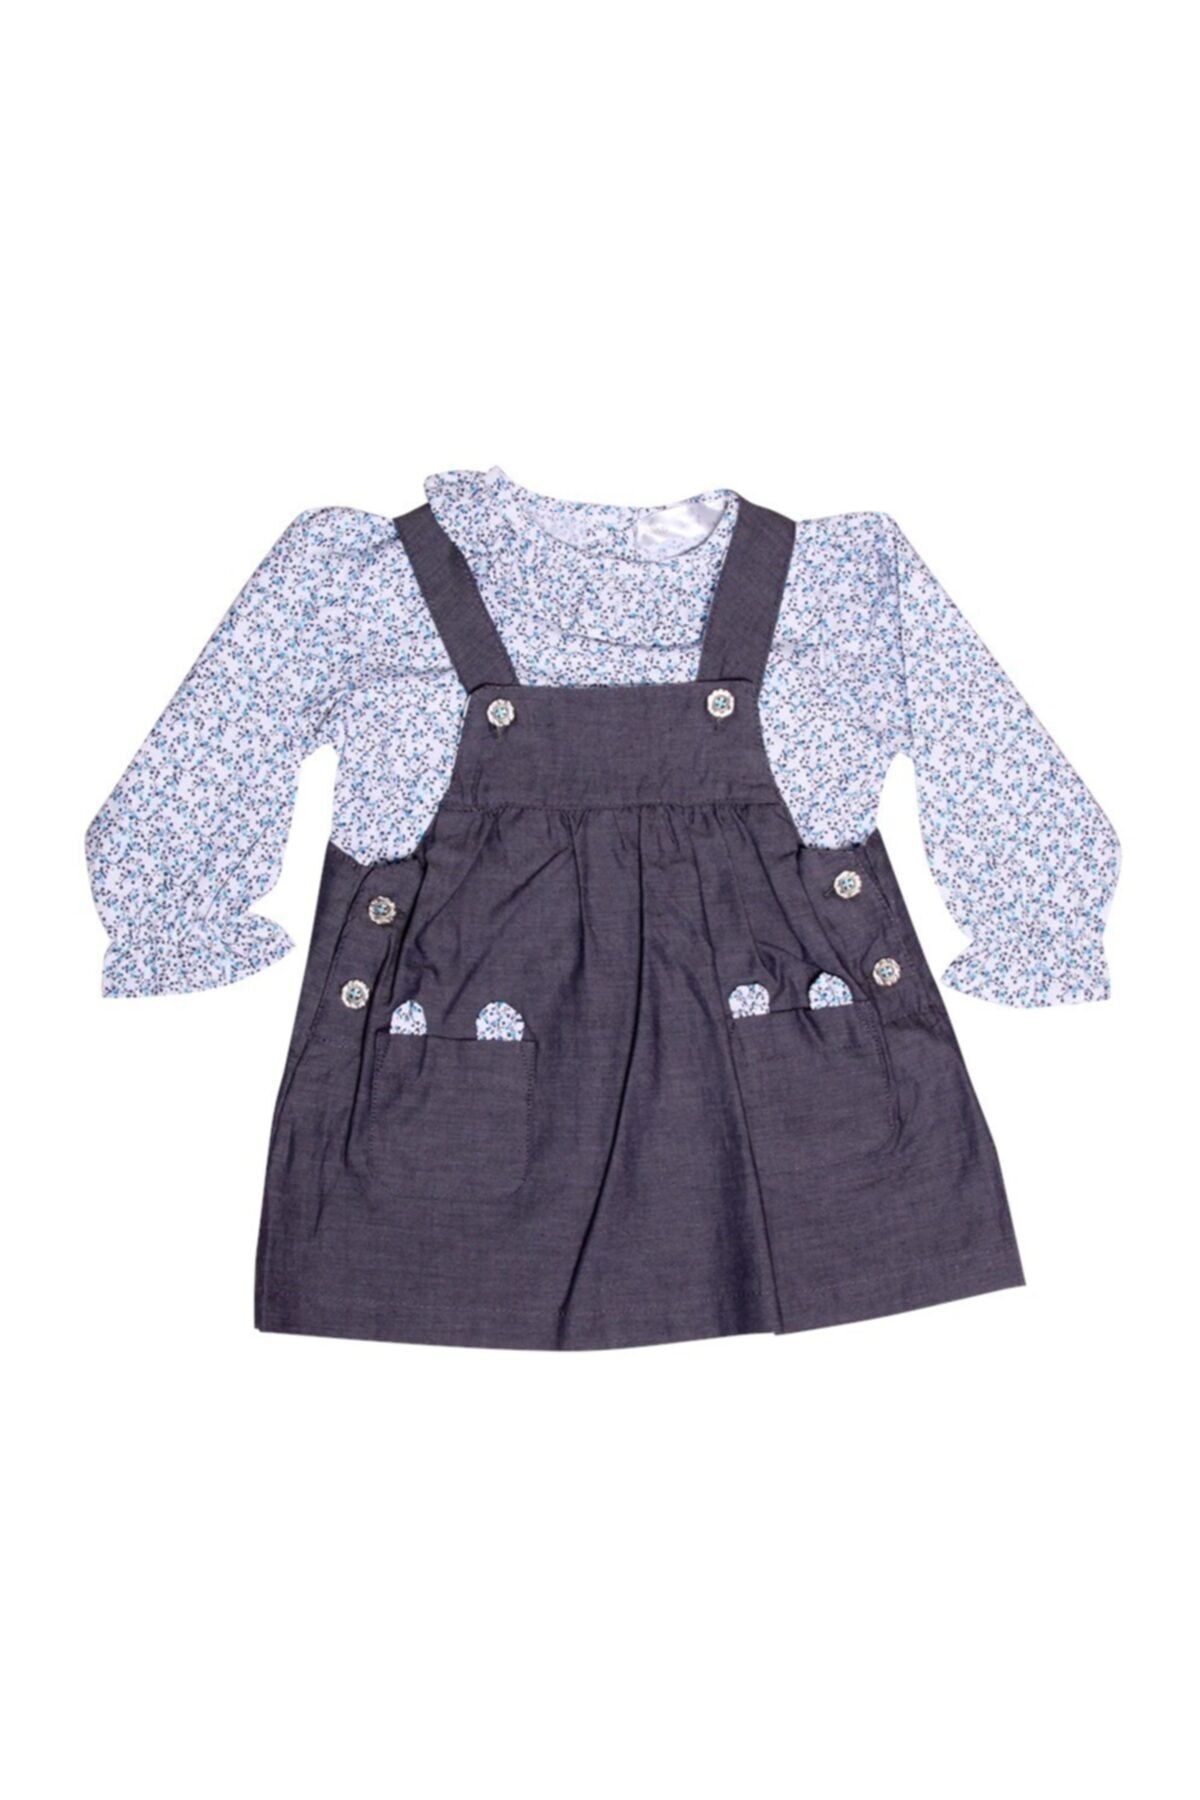 Luggi Kız Bebek Çiçekli Gömlek Ve Lacivert Elbise Takım Lg-4871-lcv